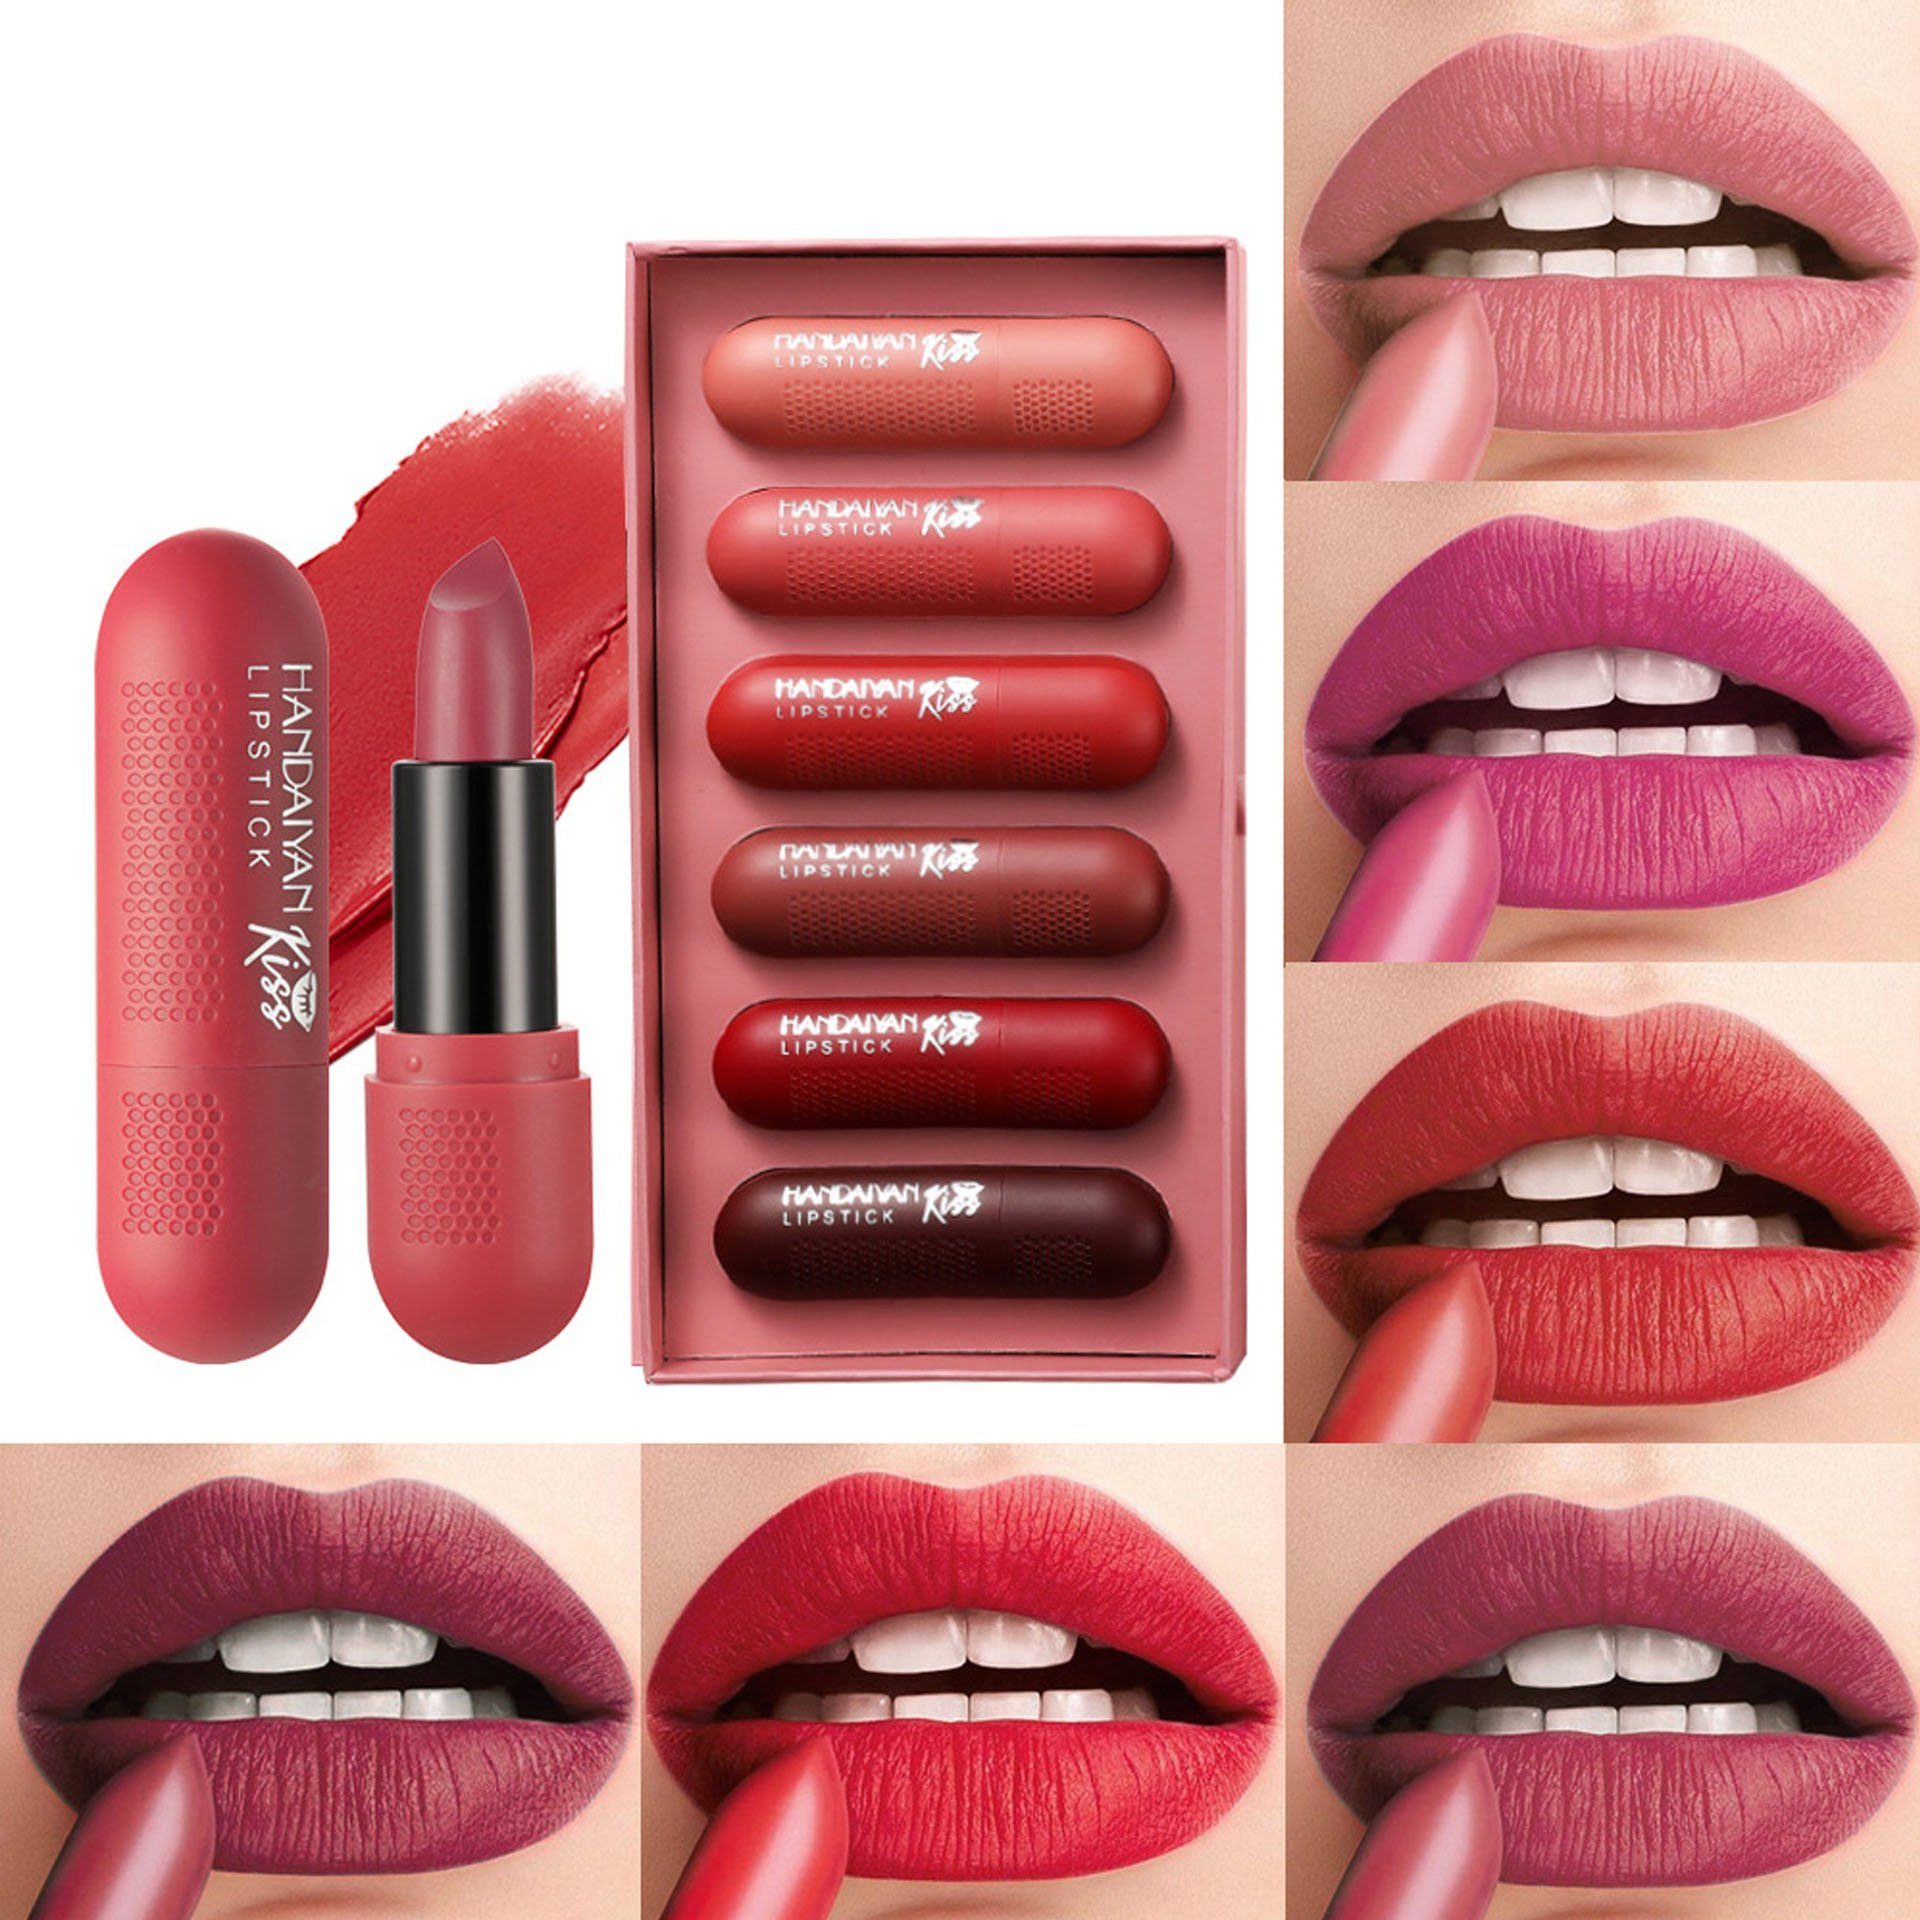 POCHUMIDUU Lippenstift-Set 6 Farben Lasting, Nude Lippenstift 6-tlg. Set Lippenstift Long Set Matt